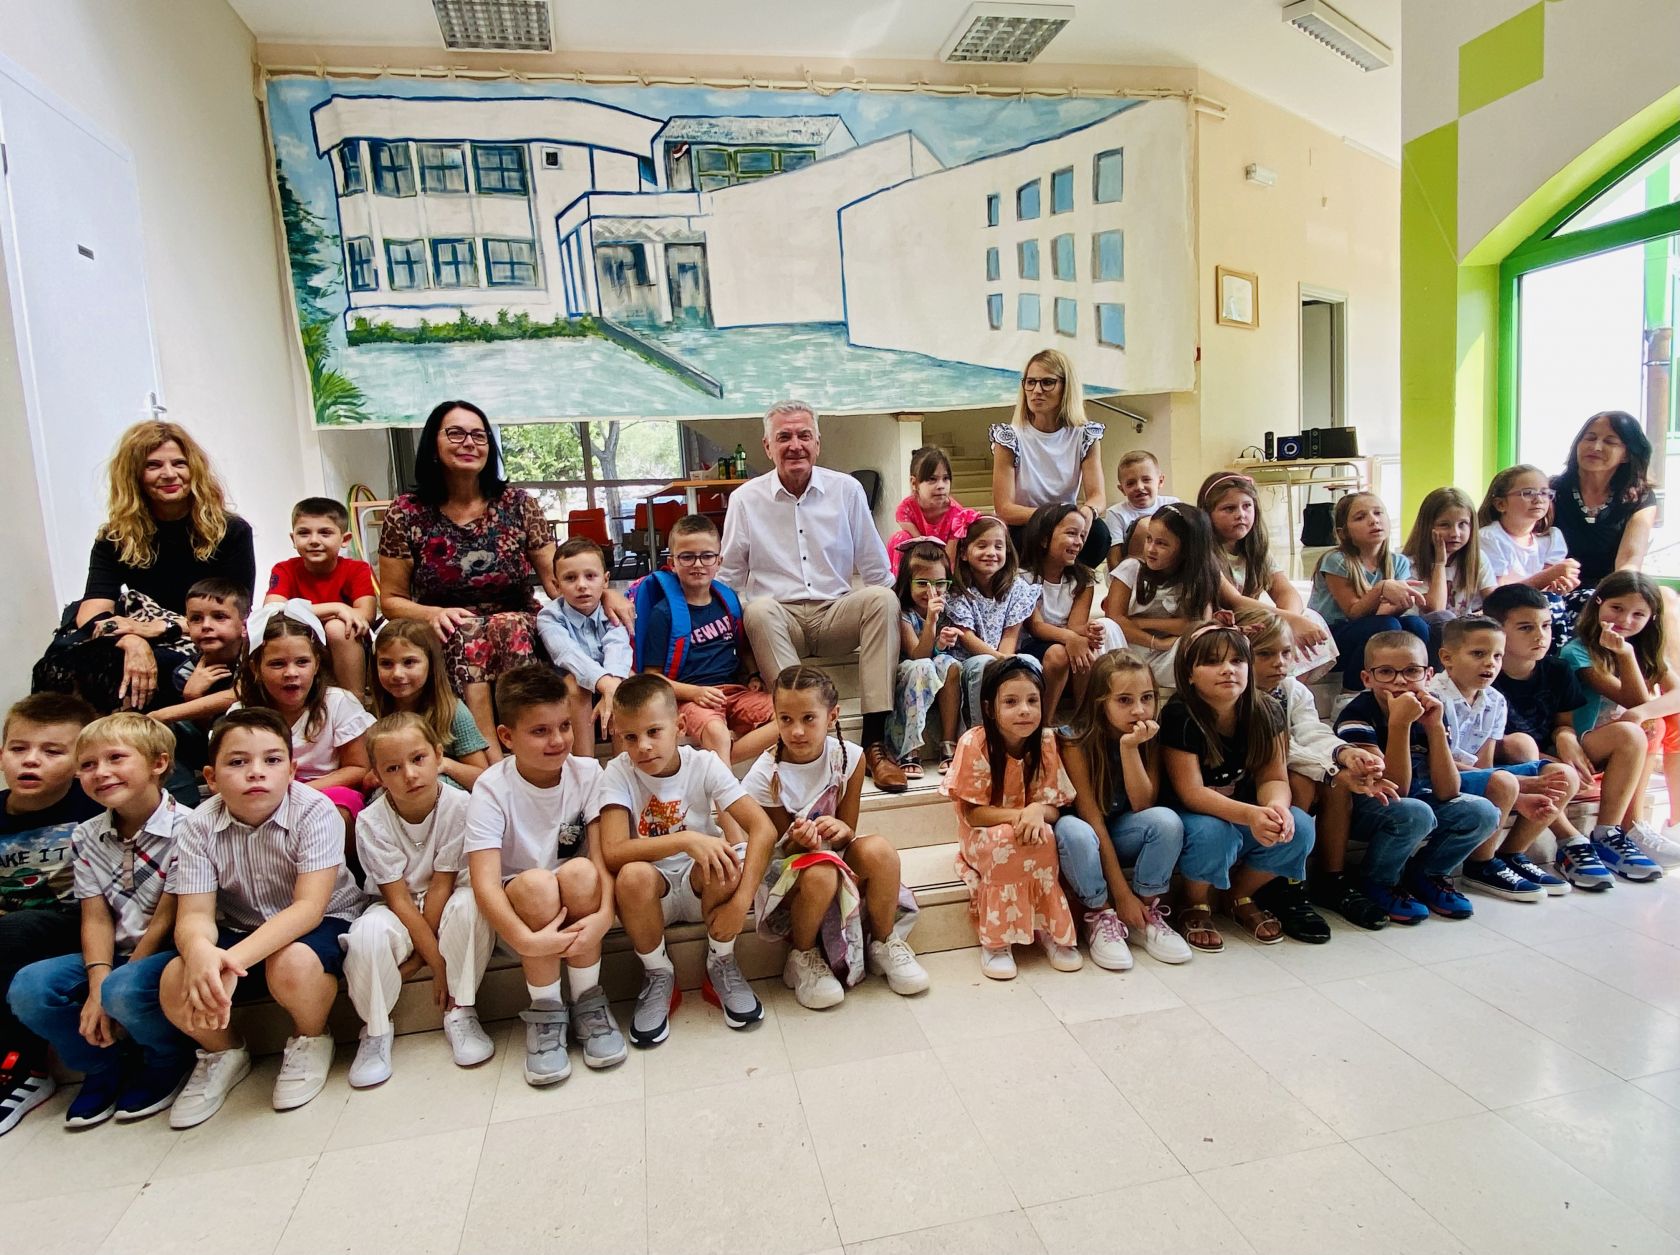  Učenicima i njihovim učiteljima gradonačelnik zaželio uspješan početak nove školske godine